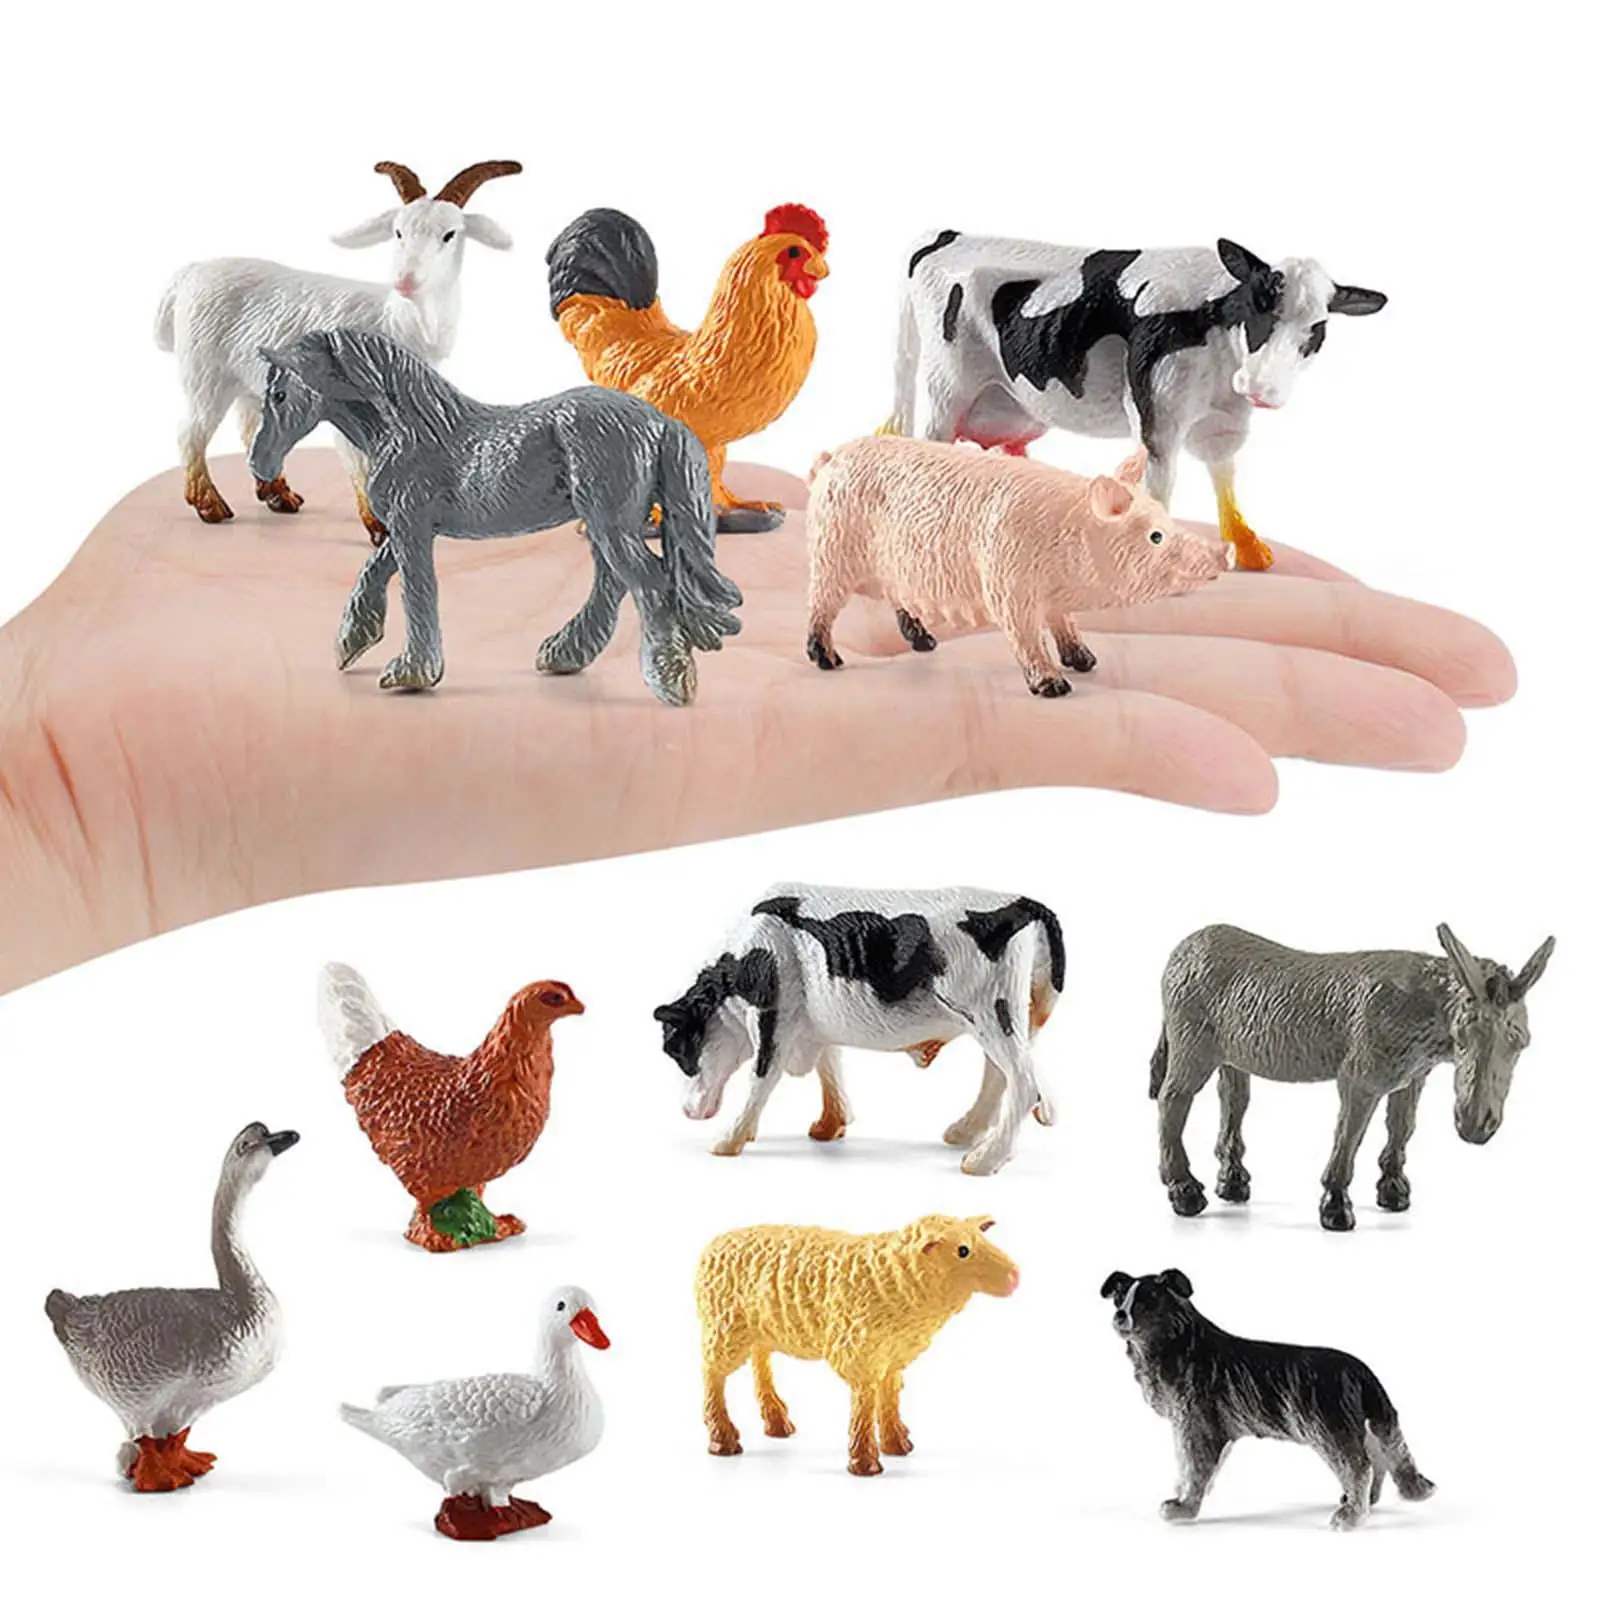 

12x реалистичные фигурки животных, Обучающие игрушки, игрушка для торта, Топпер для детей